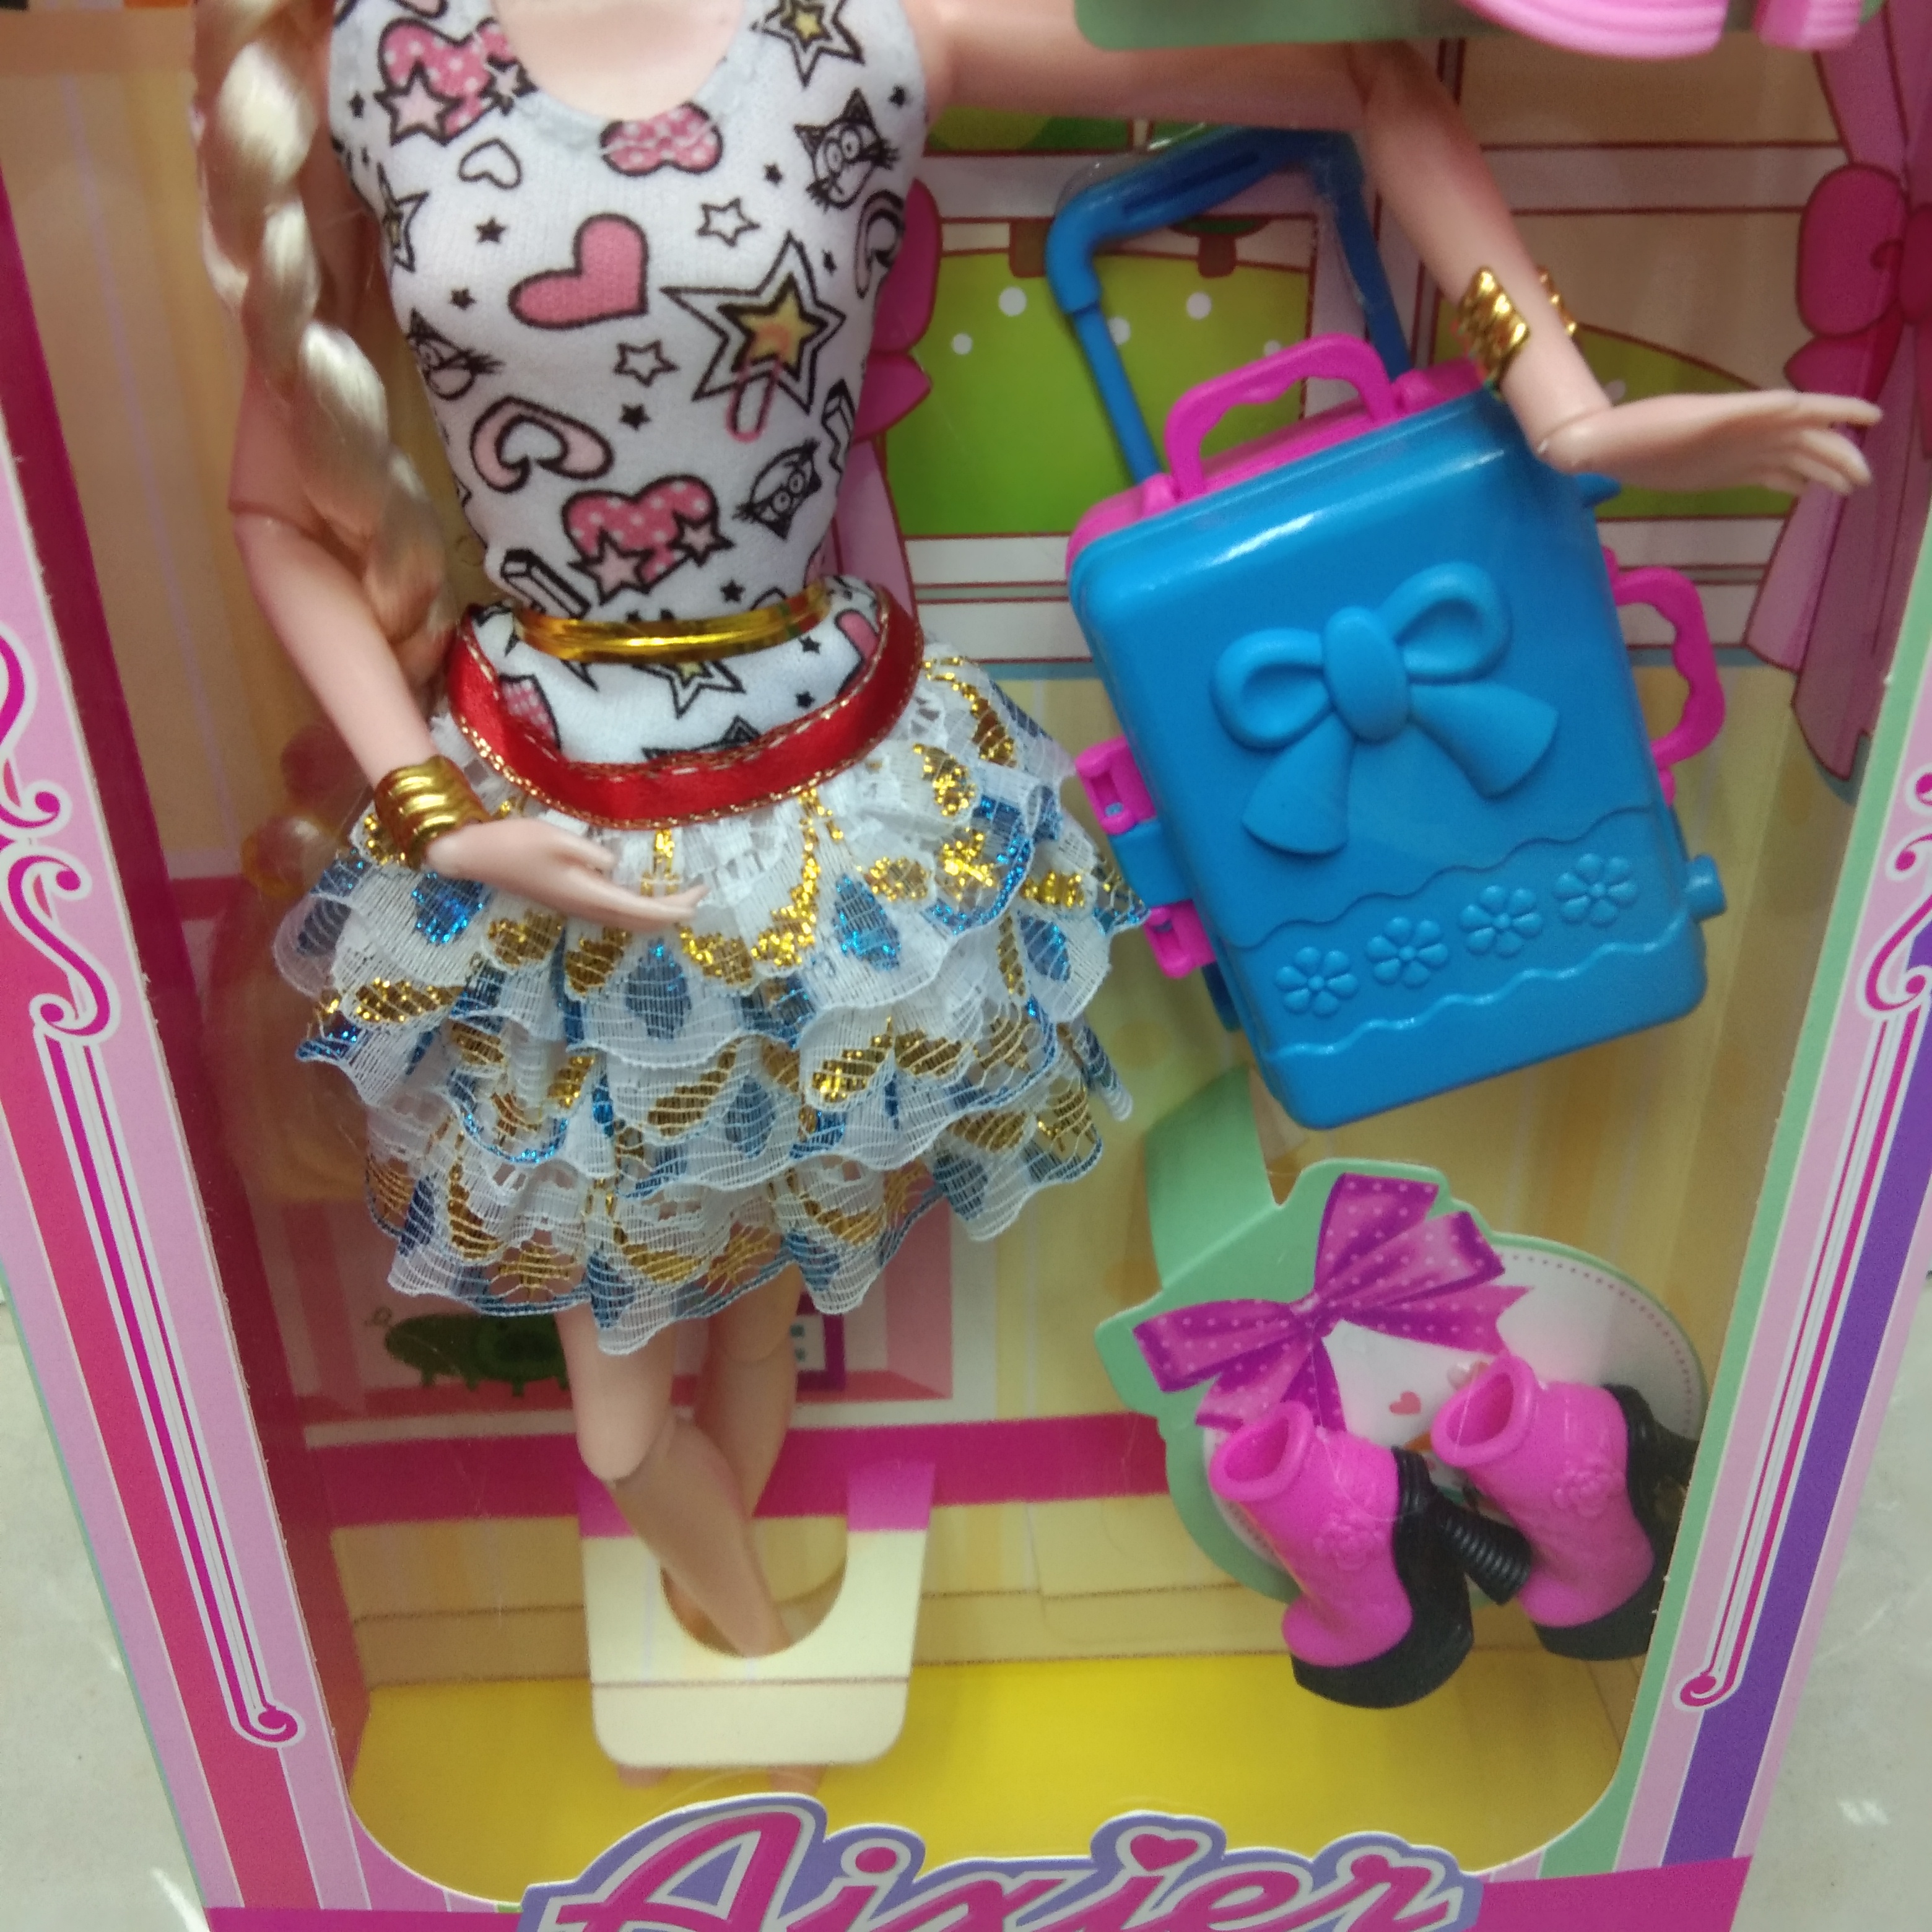 塑料儿童益智玩具女孩出行行李箱娃娃细节图